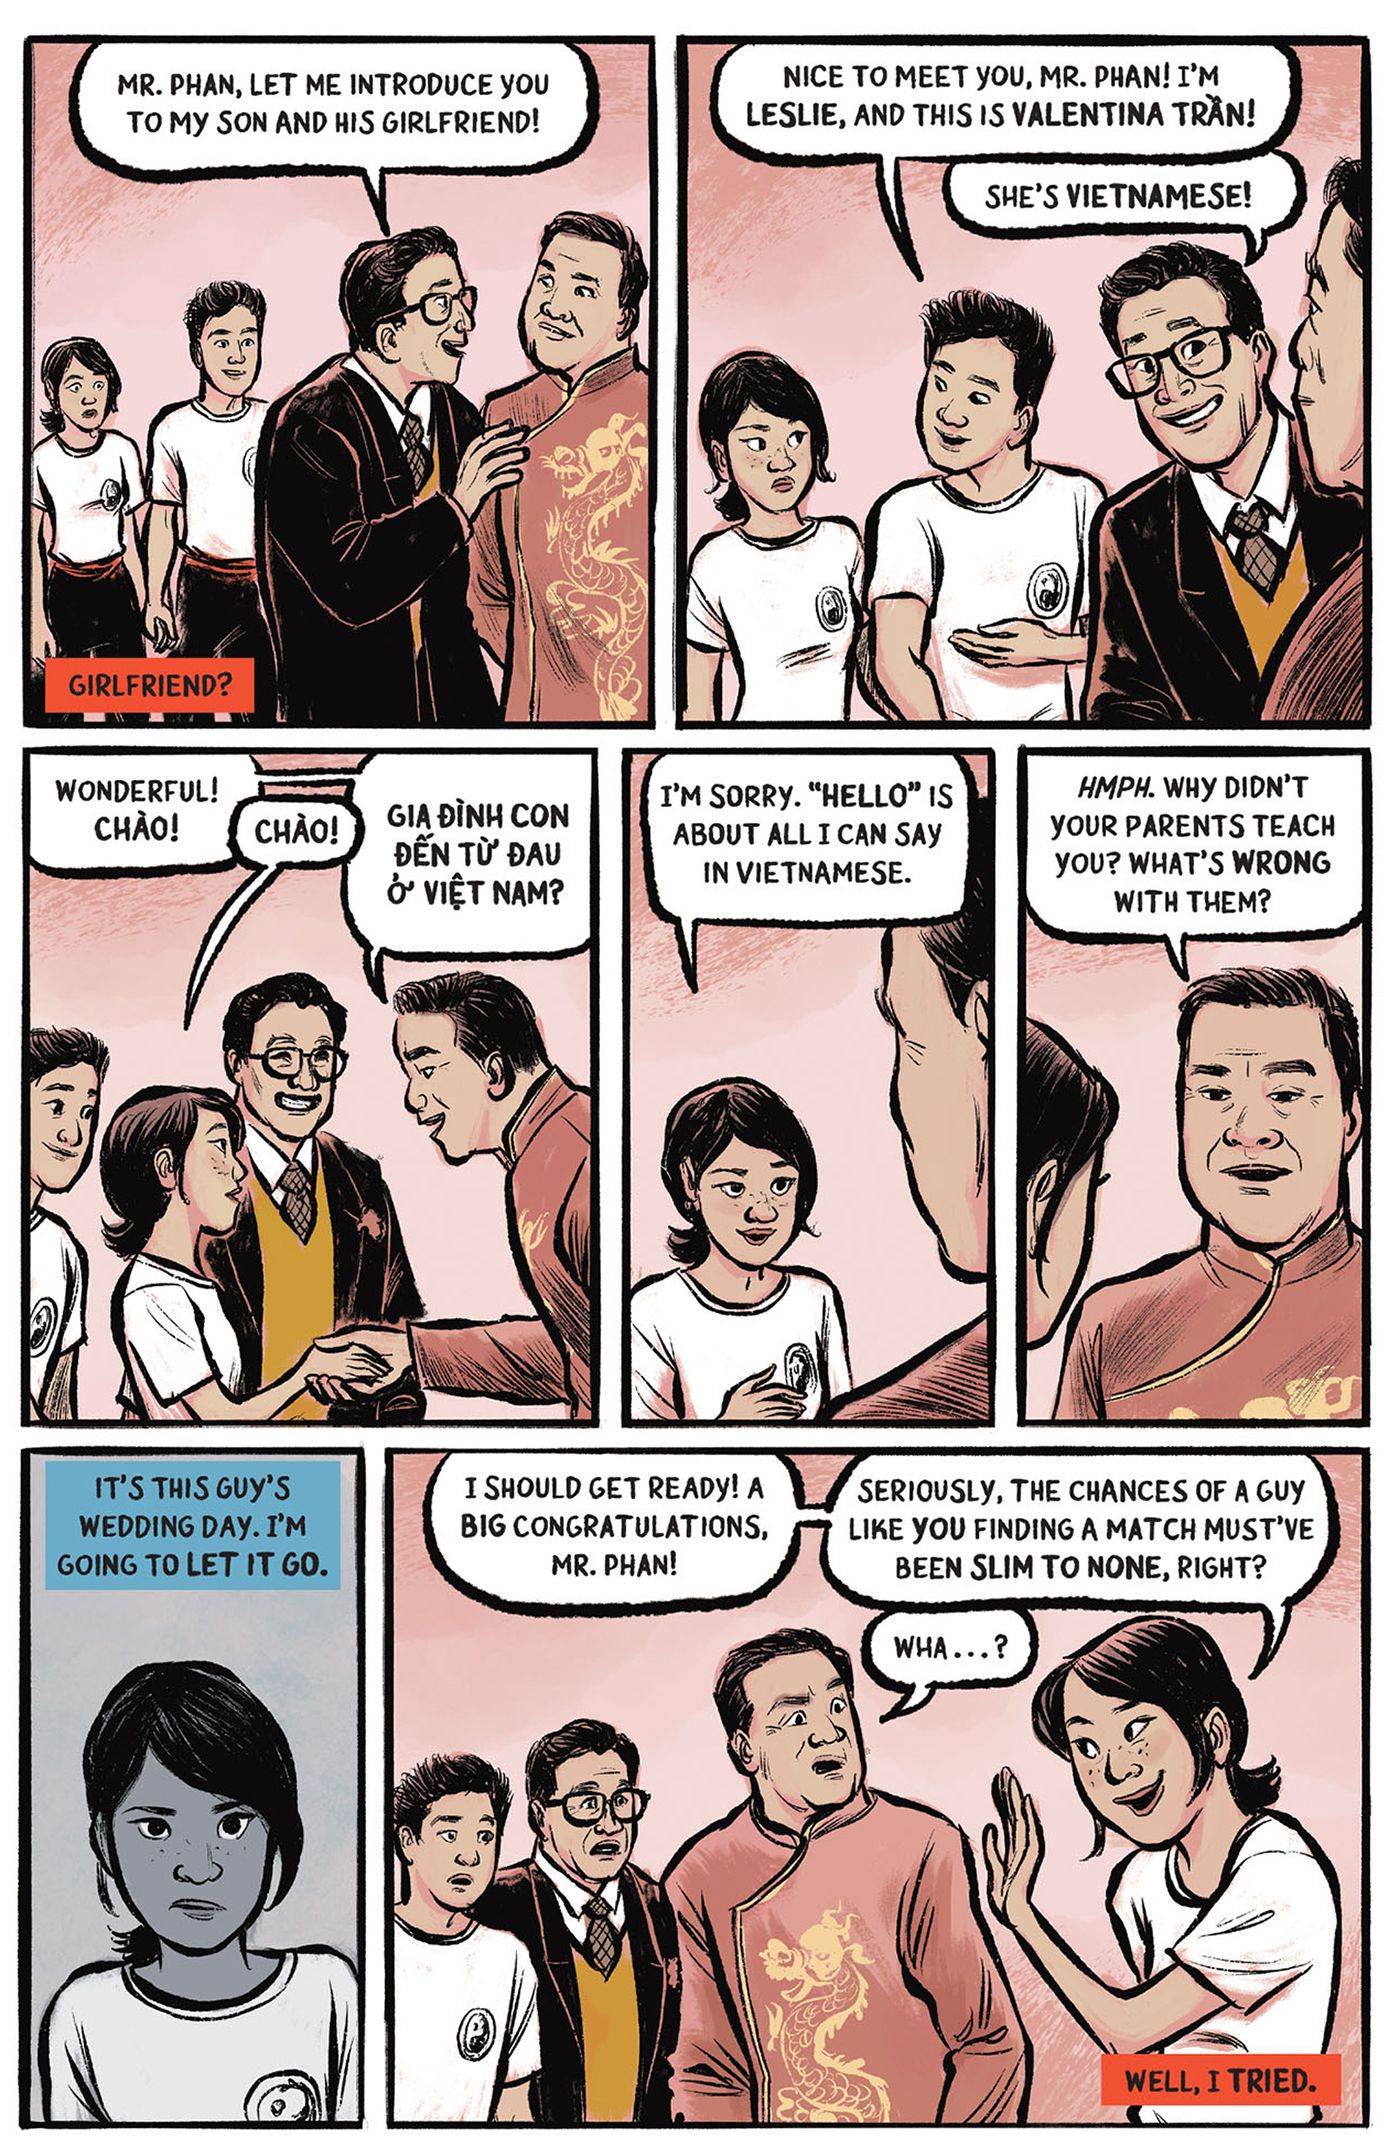 História de amor do Ano Novo Lunar - Painéis de quadrinhos: Valentina não fala vietnamita